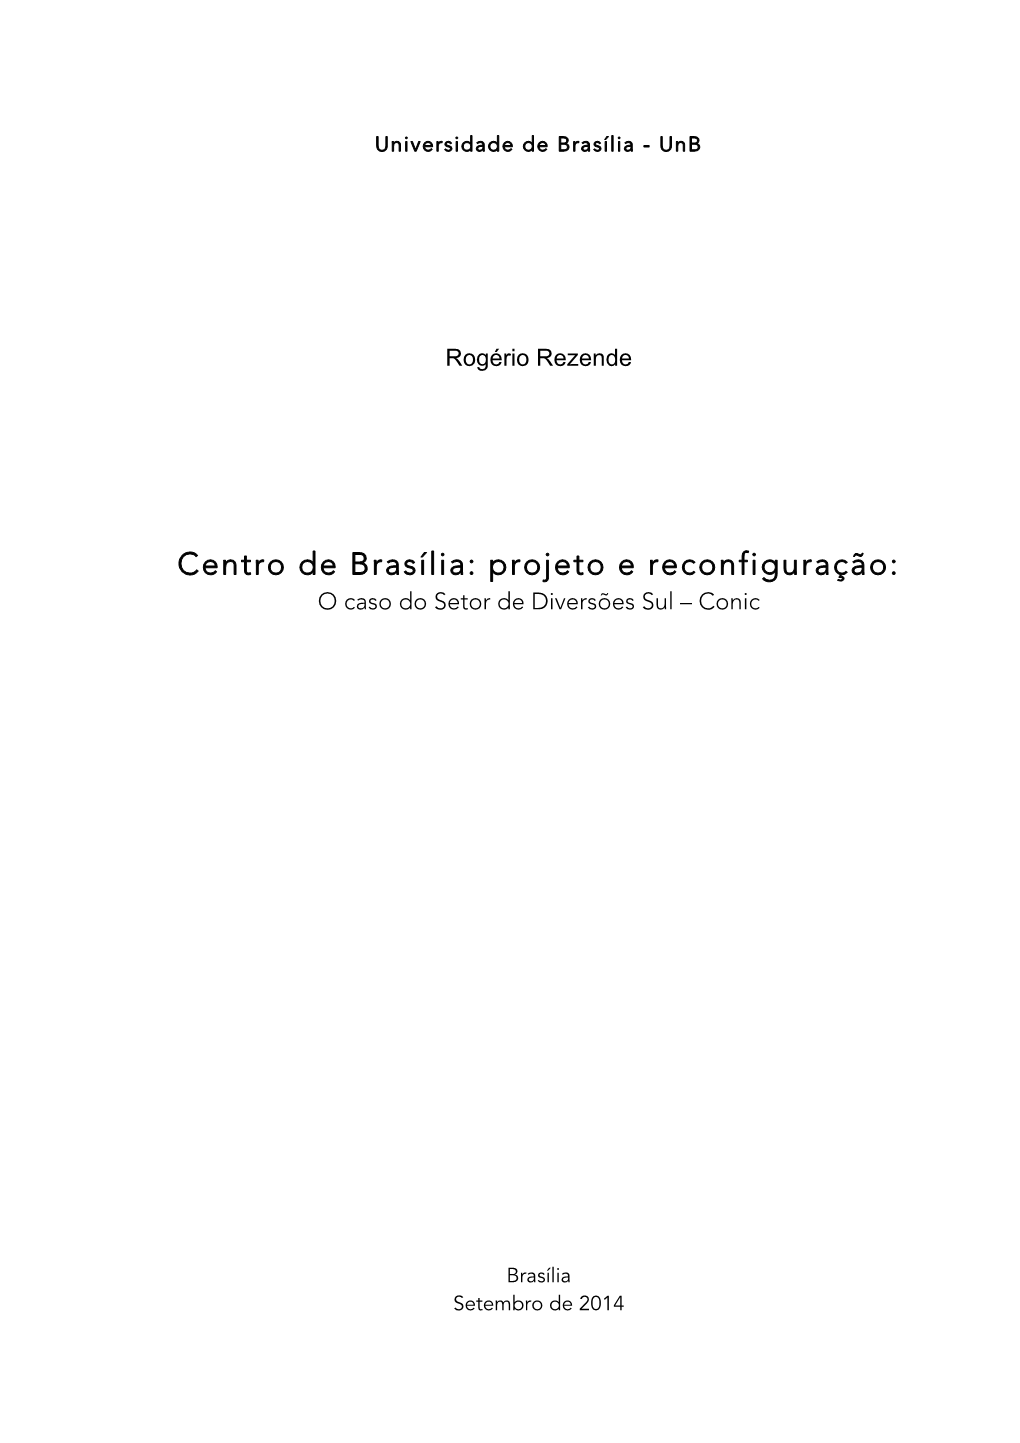 Centro De Brasília: Projeto E Reconfiguração: O Caso Do Setor De Diversões Sul – Conic